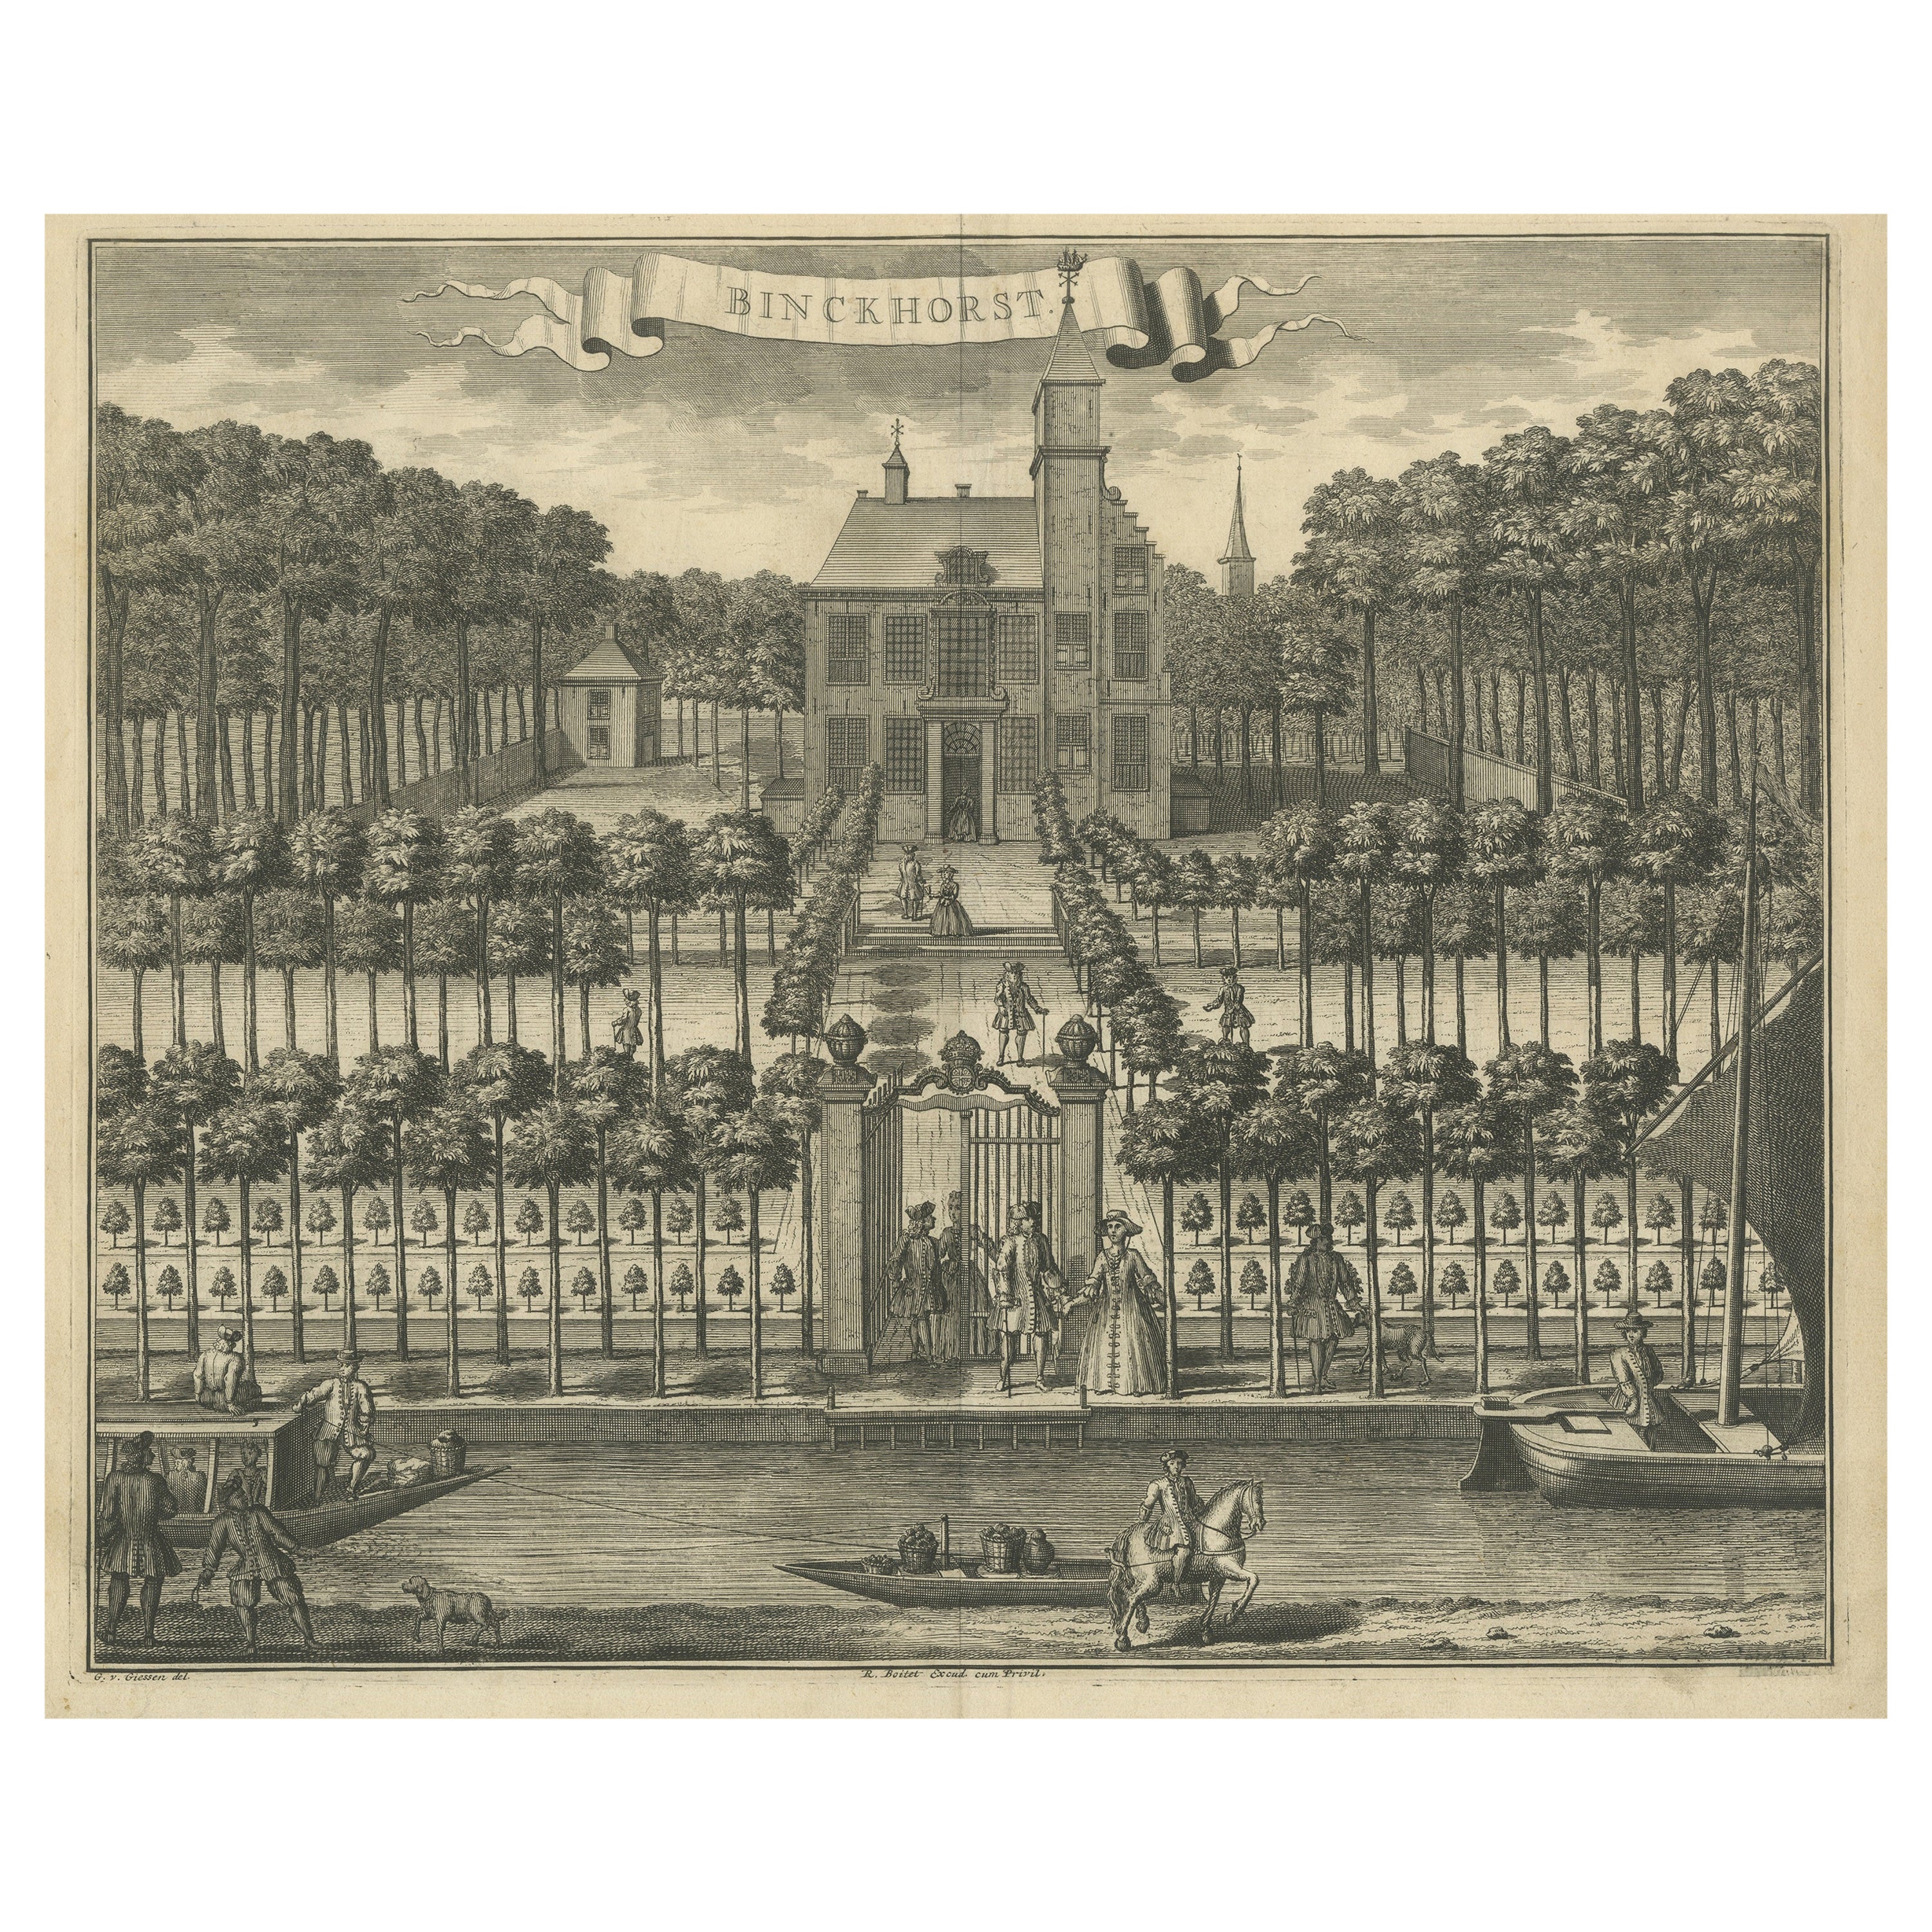 Antique Print of Binckhorst Castle, The Hague